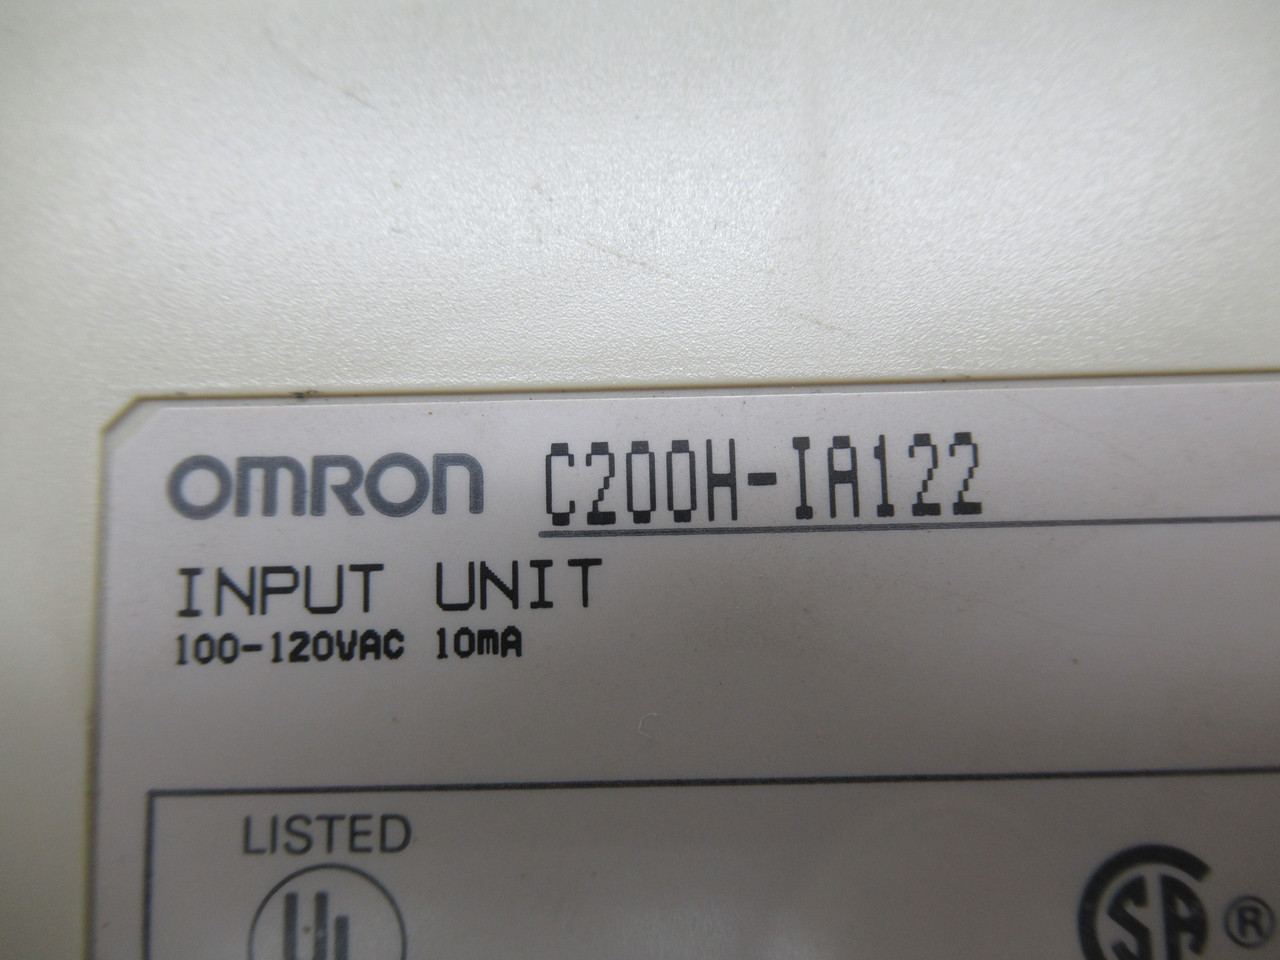 OMRON C200H-IA122 Input Unit 100-120VAC 10mA USED